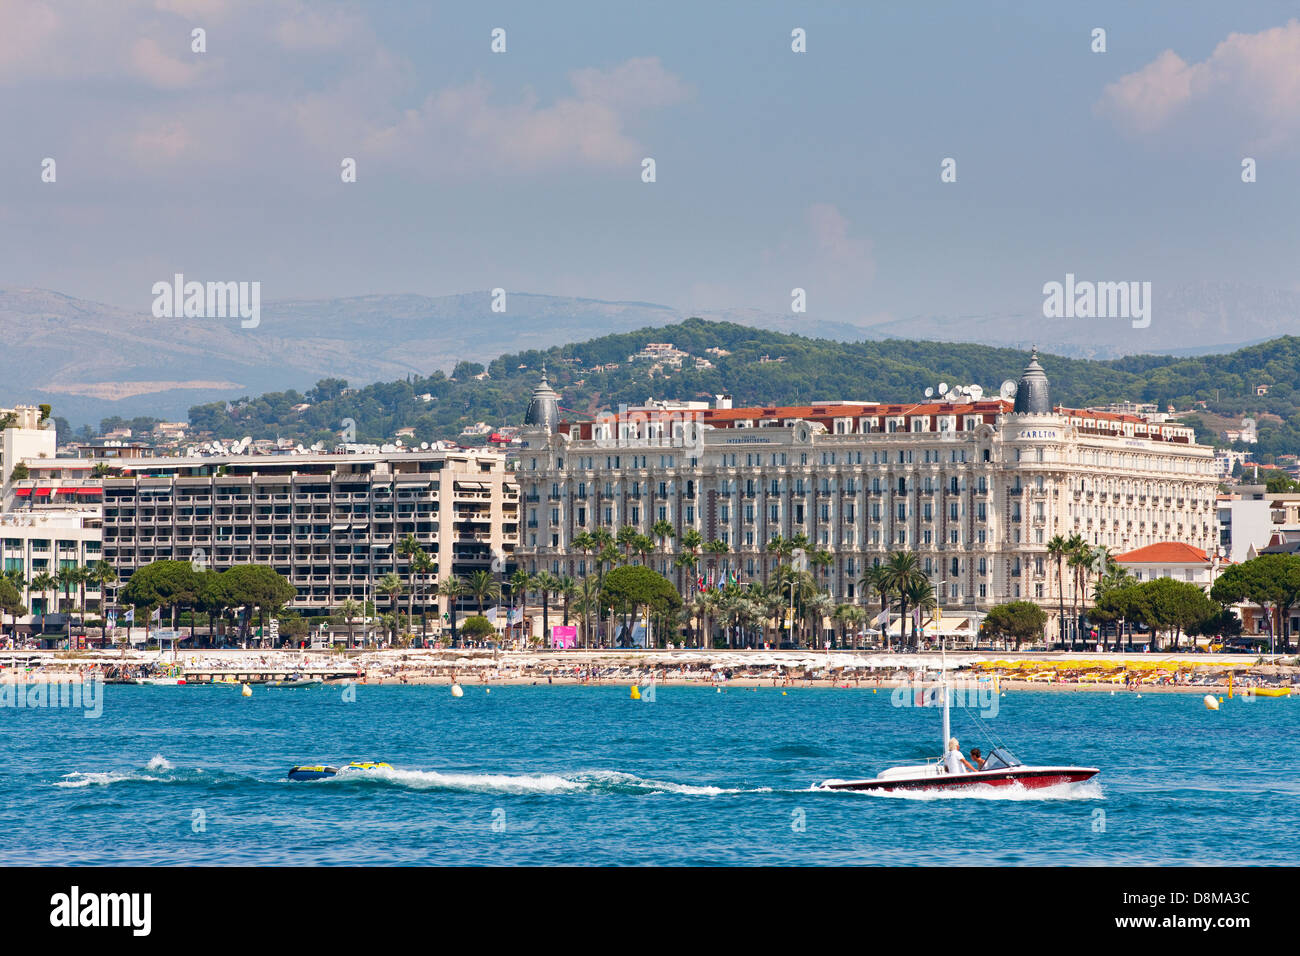 Il famoso hotel Carlton, Boulevard de la Croisette lungo il lungomare, Cannes, Francia Foto Stock